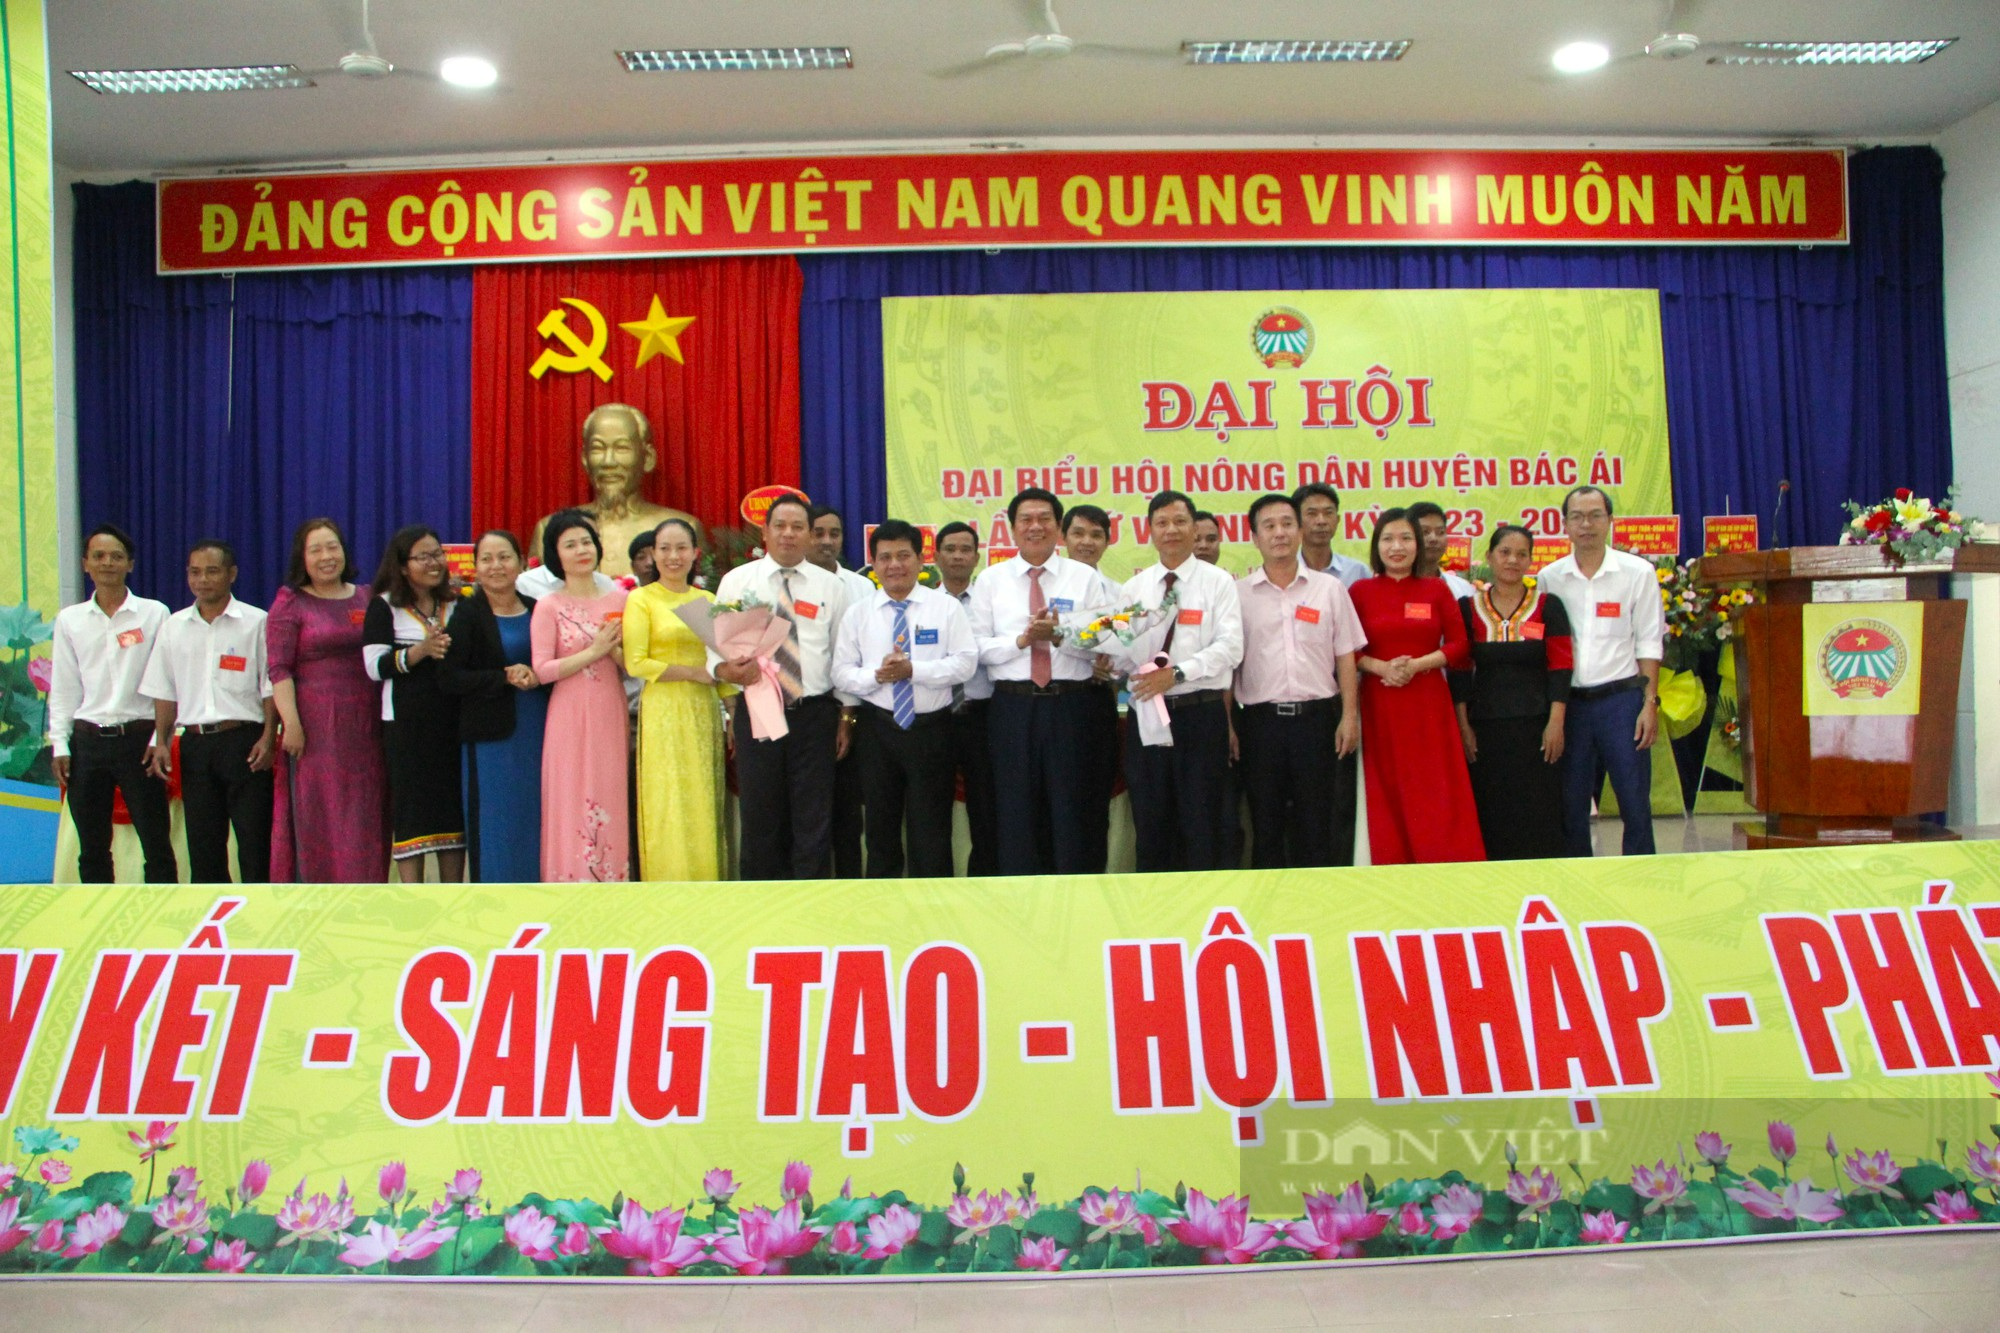 Đại Hội Đại biểu Hội Nông dân huyện Bác Ái ở Ninh Thuận, ông Nguyễn Đức Nghĩa tái đắc cử Chủ tịch - Ảnh 5.